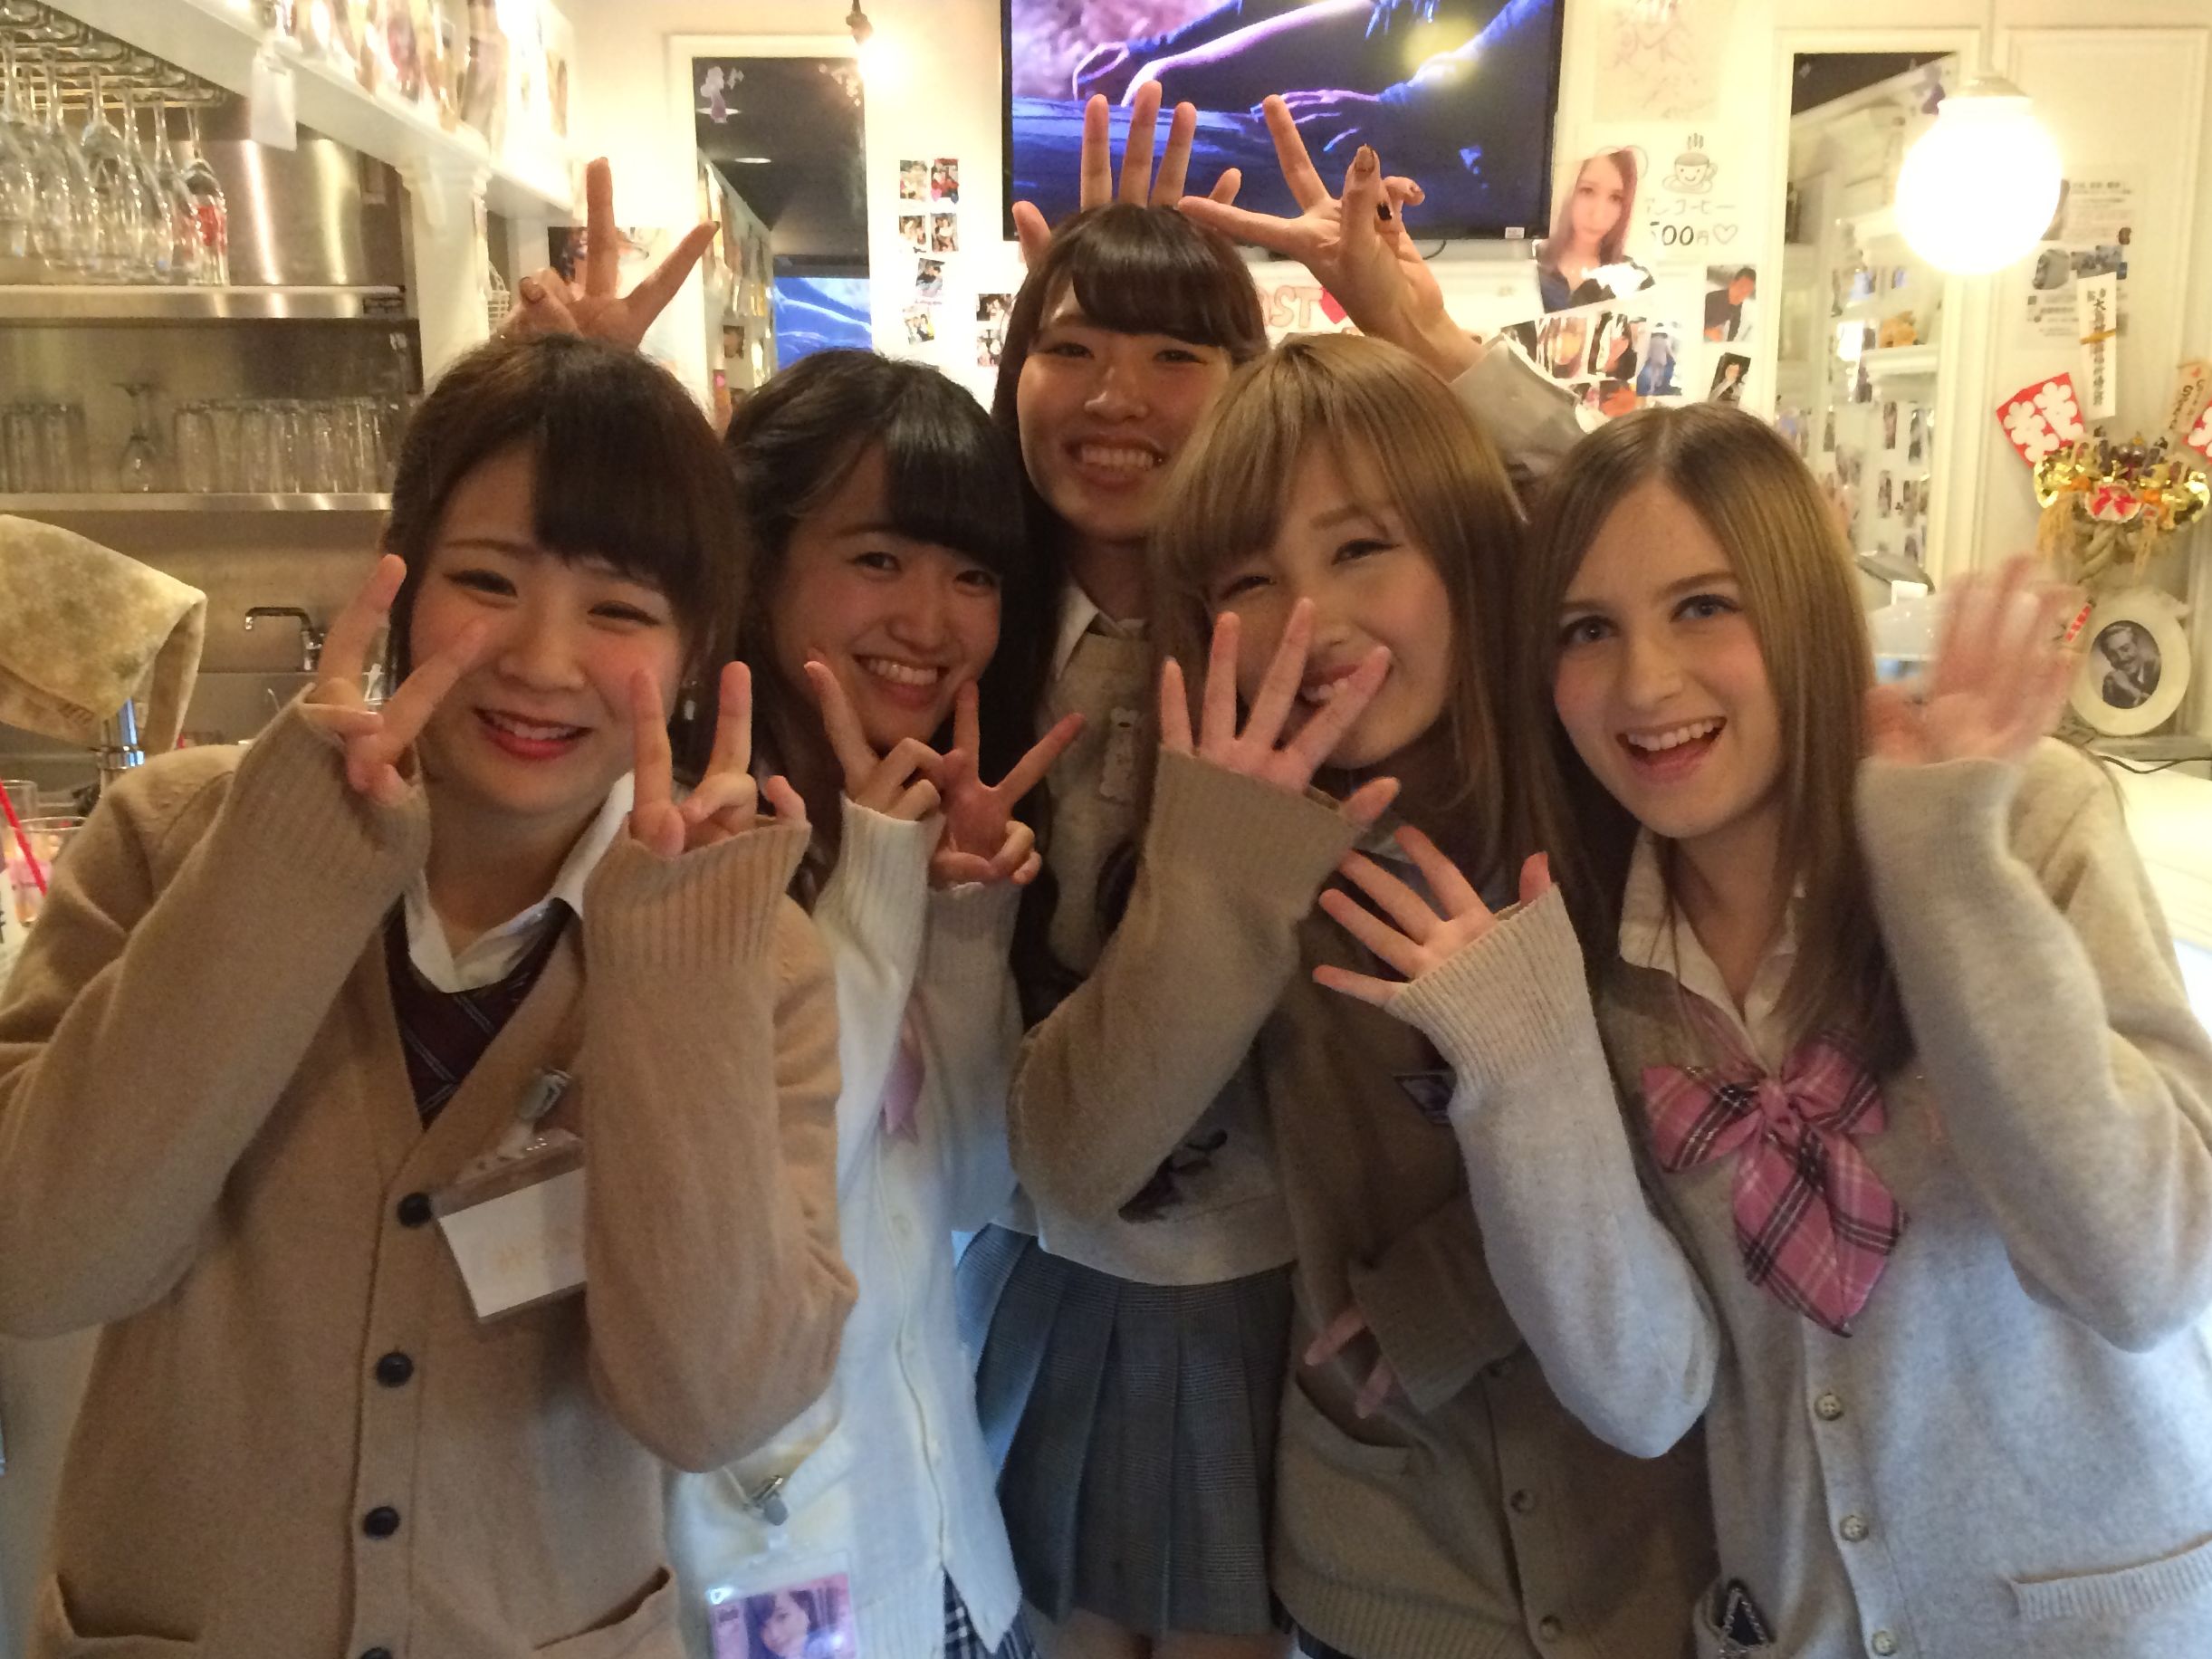 Japanese Forced Bus - Japan school girl culture: The dark truth | CNN